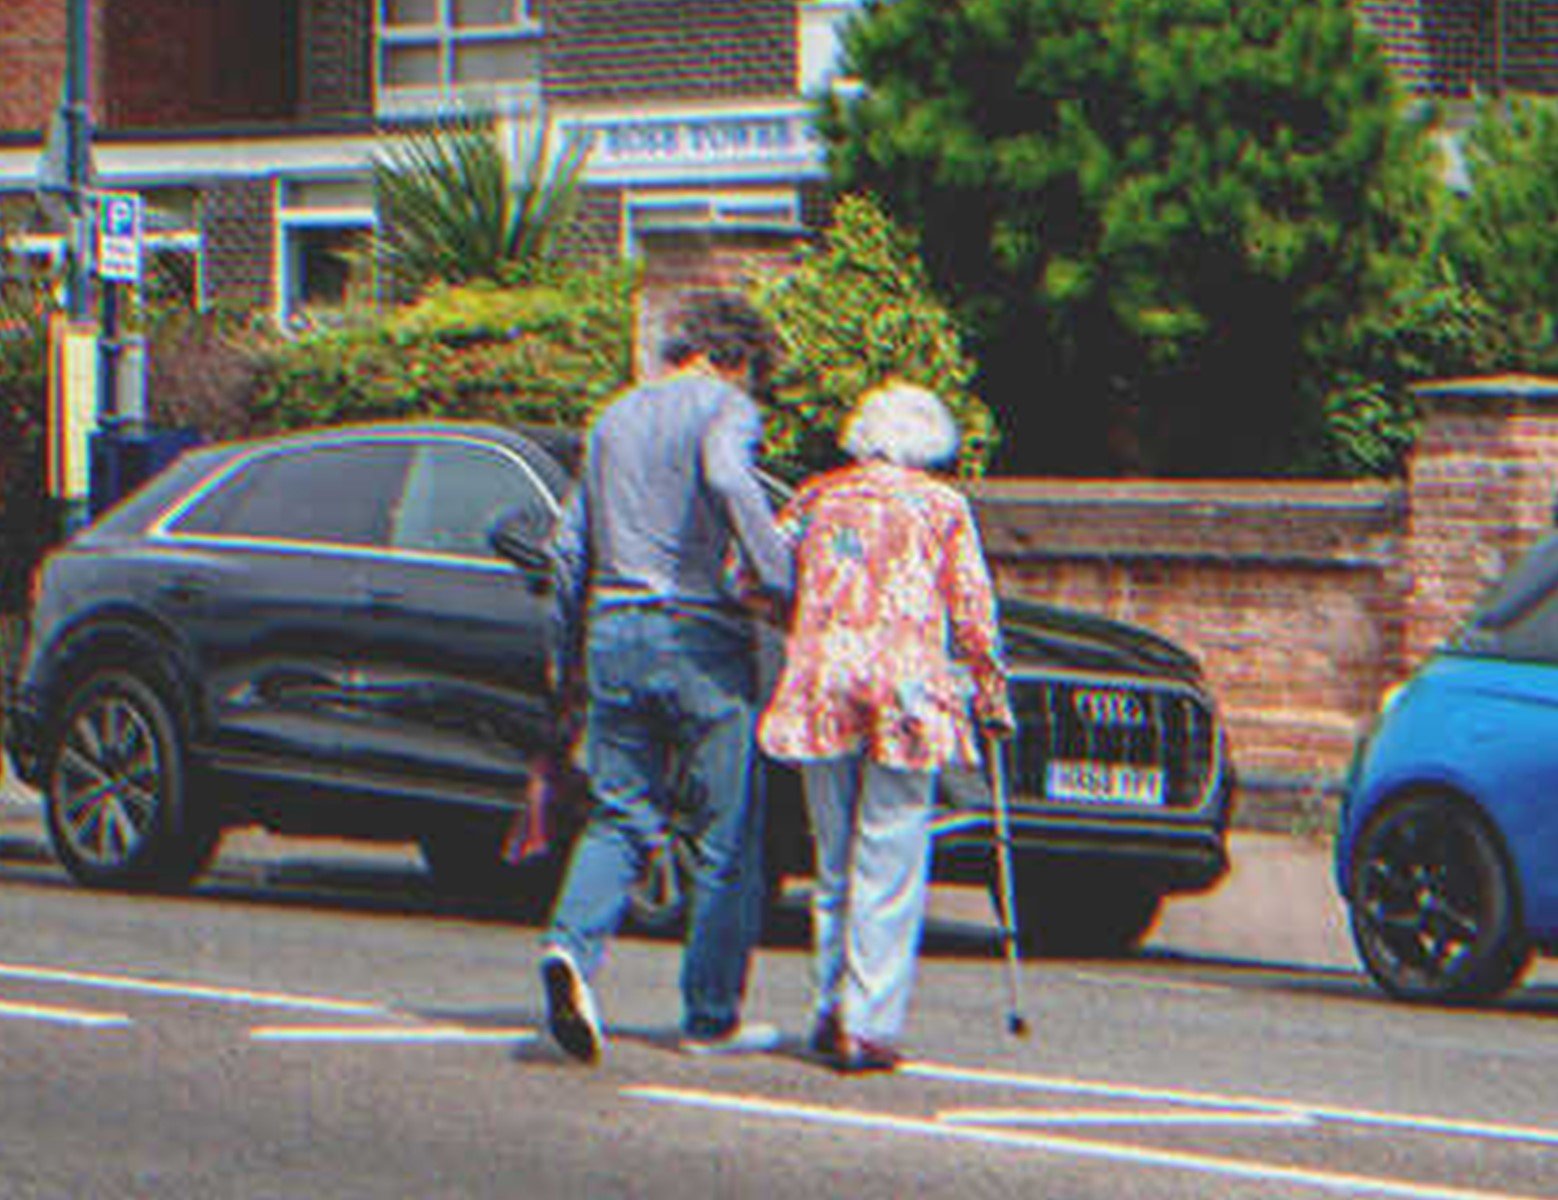 George half Doris jeden Tag, die Straße zu überqueren. | Quelle: Shutterstock